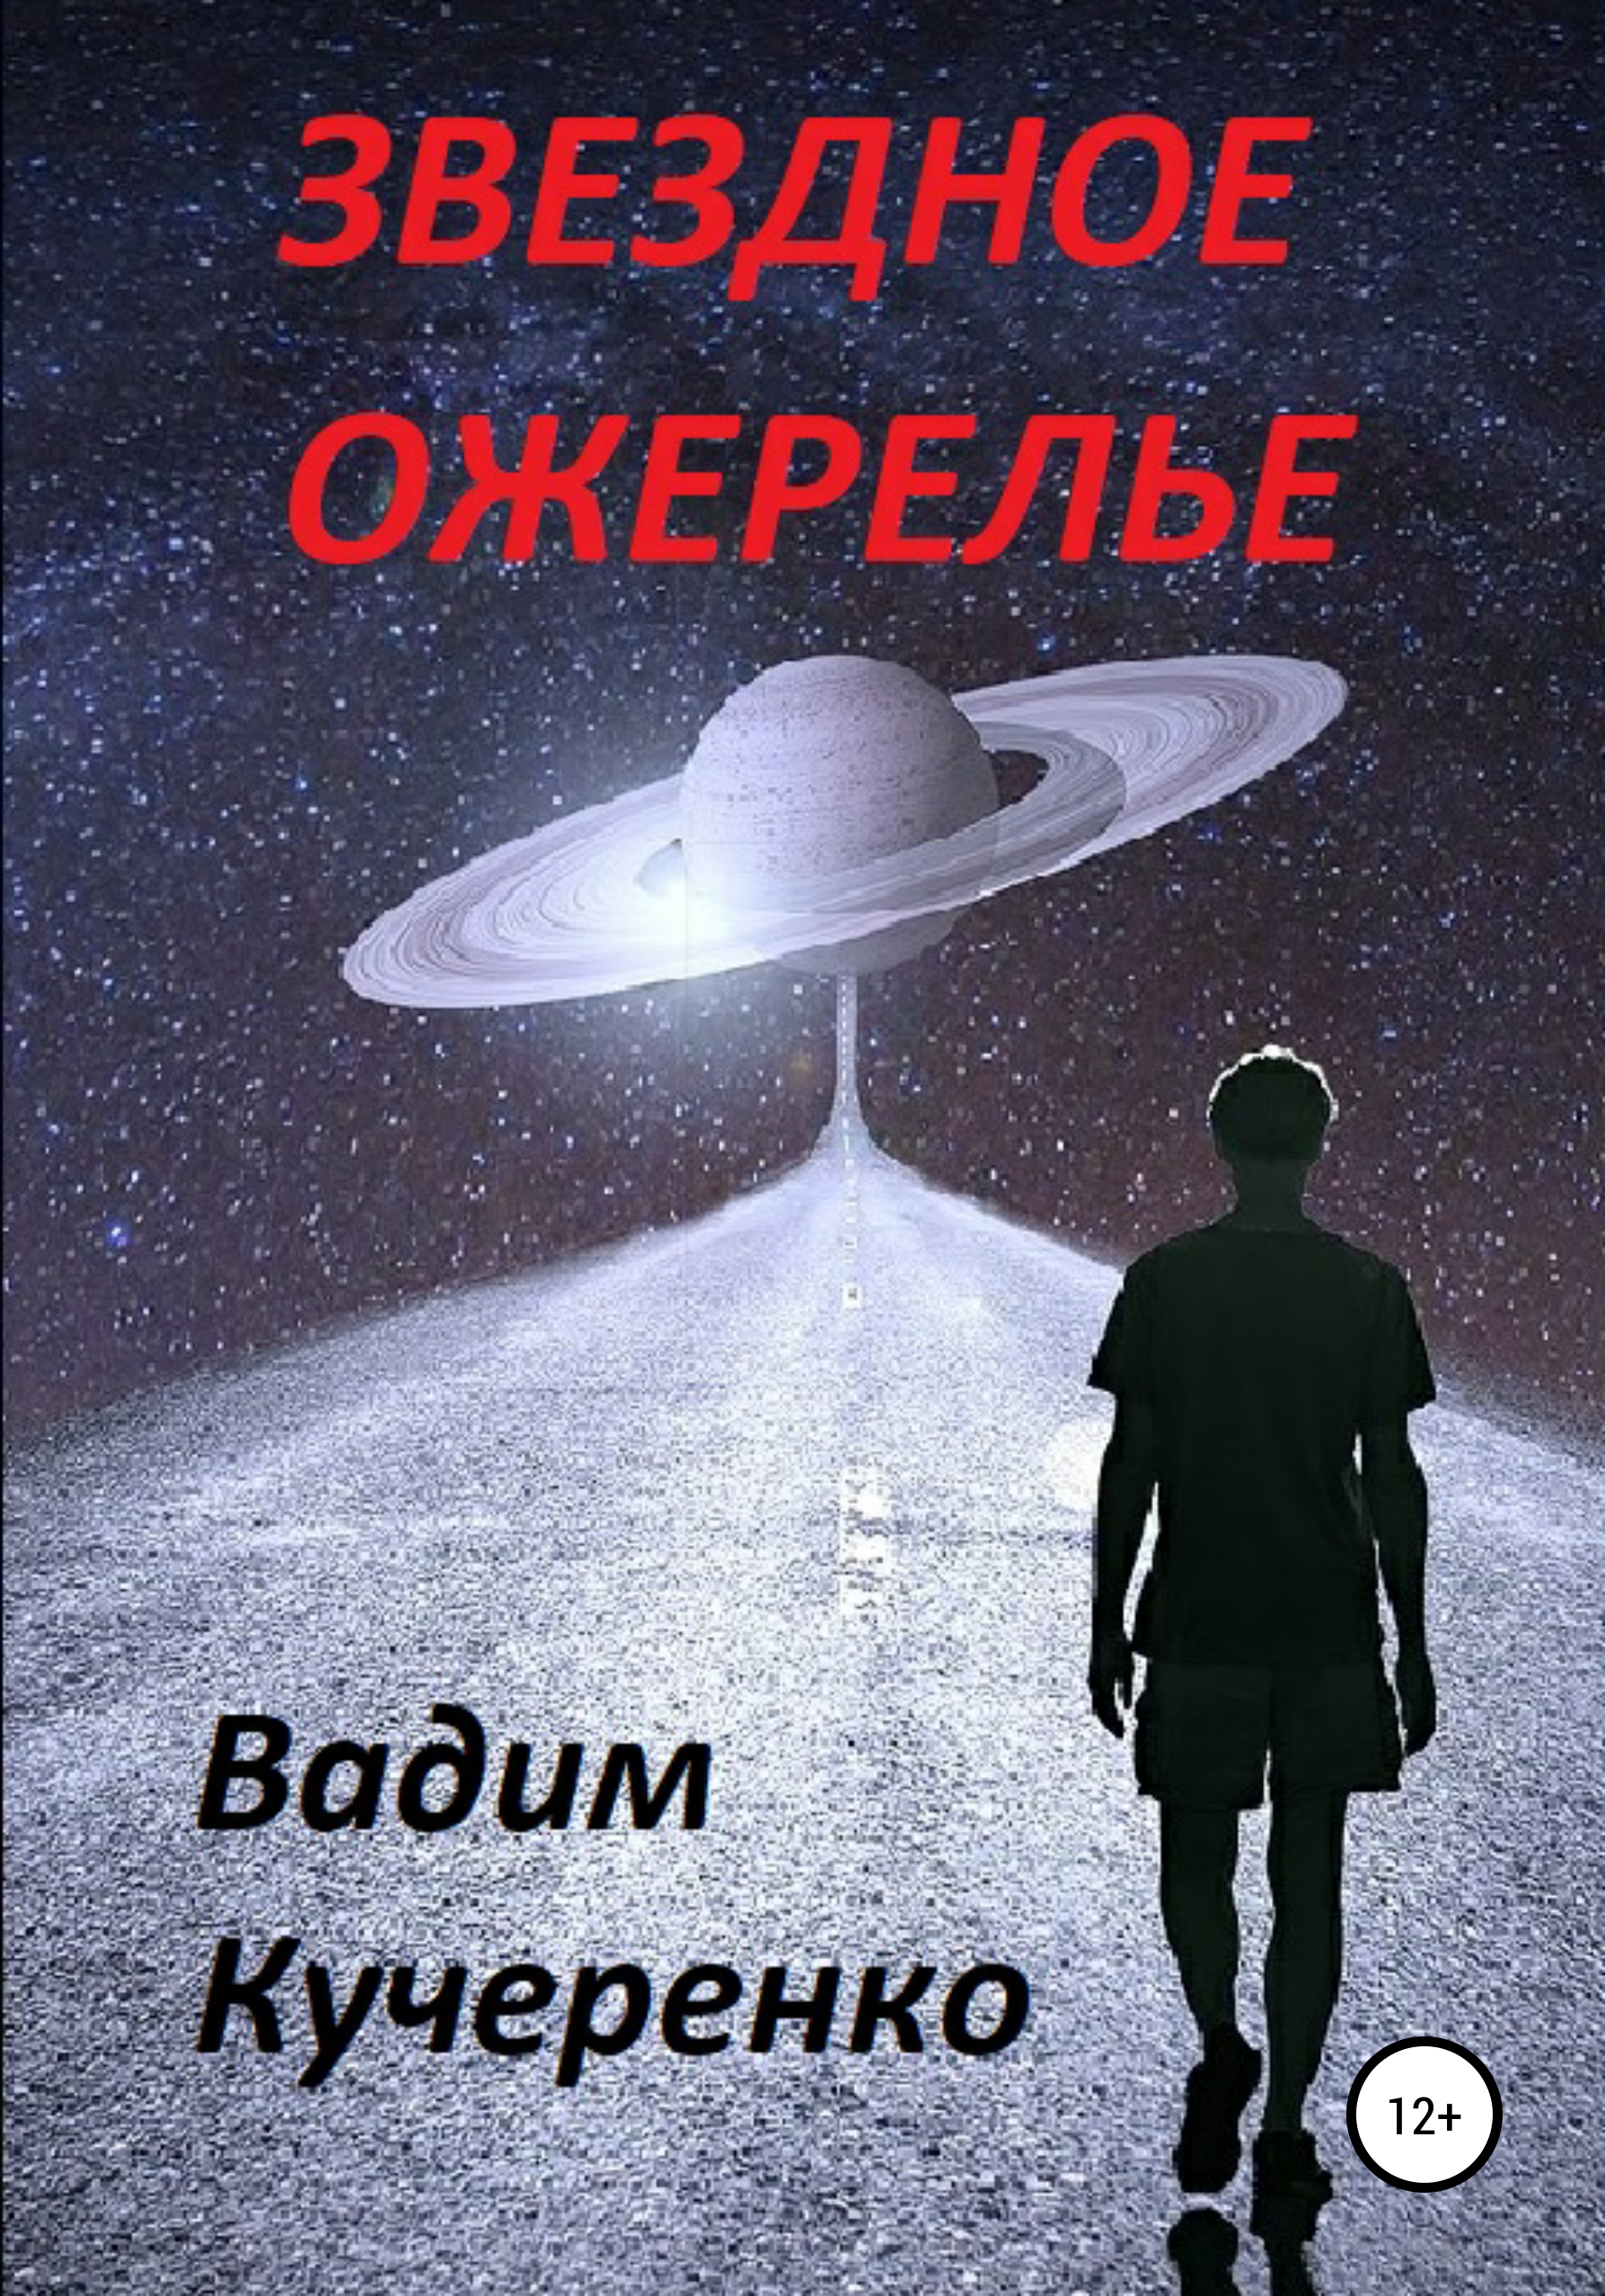 Звездное ожерелье – Вадим Иванович Кучеренко